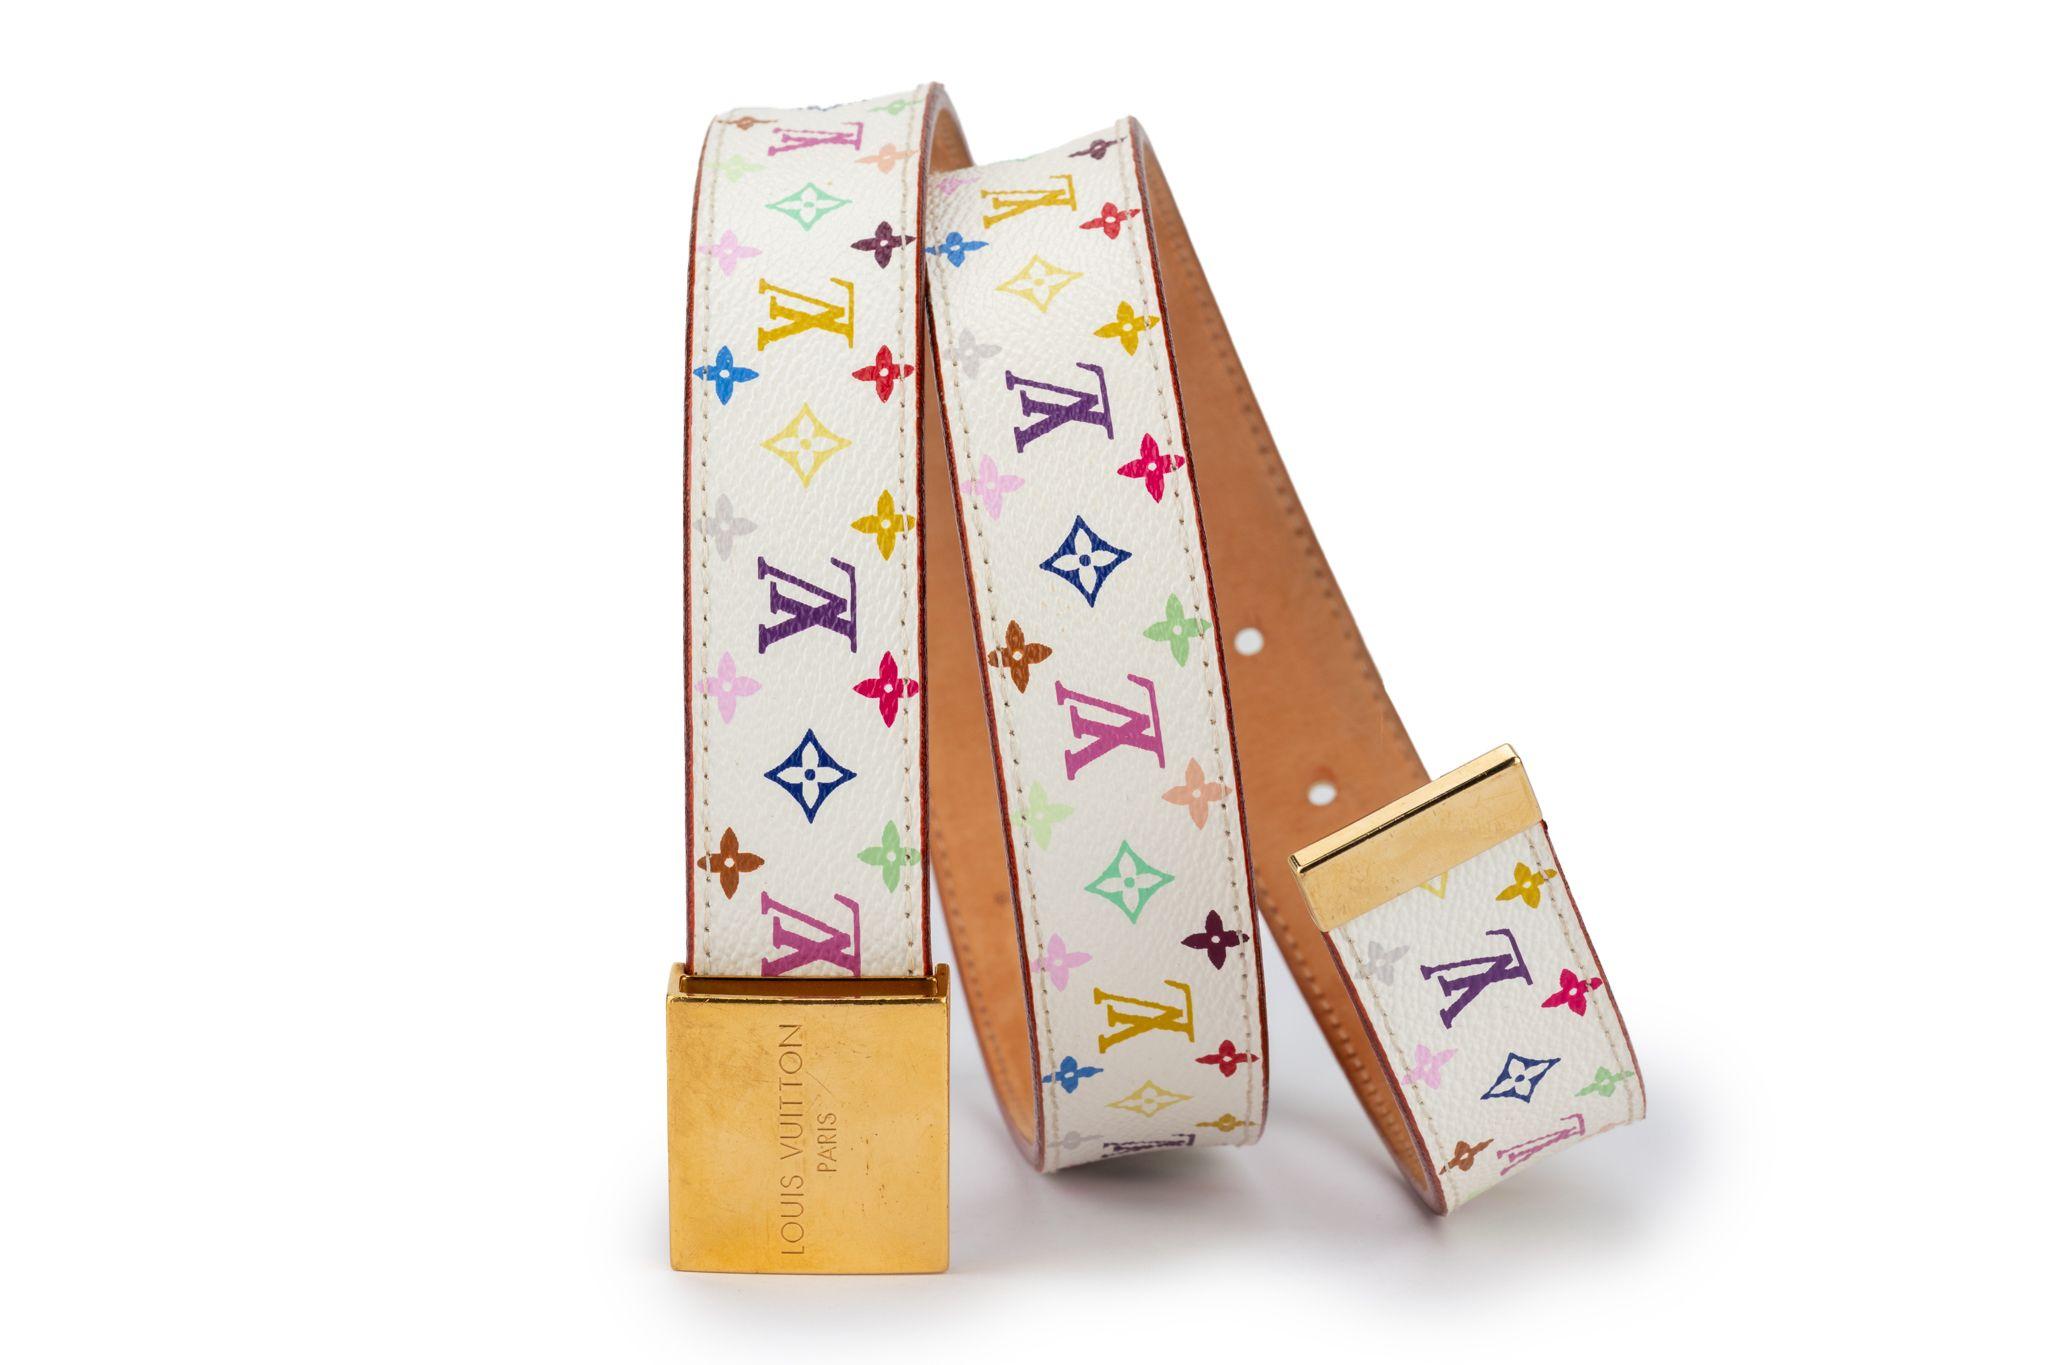 Louis Vuitton kollaboriert 2003 in limitierter Auflage mit Takashi Murakami. Weißes Leder mit mehrfarbigem Logodruck, Innenausstattung aus natürlichem Rindsleder, goldfarbene Beschläge. Leichte Abnutzungserscheinungen an der Innenausstattung,